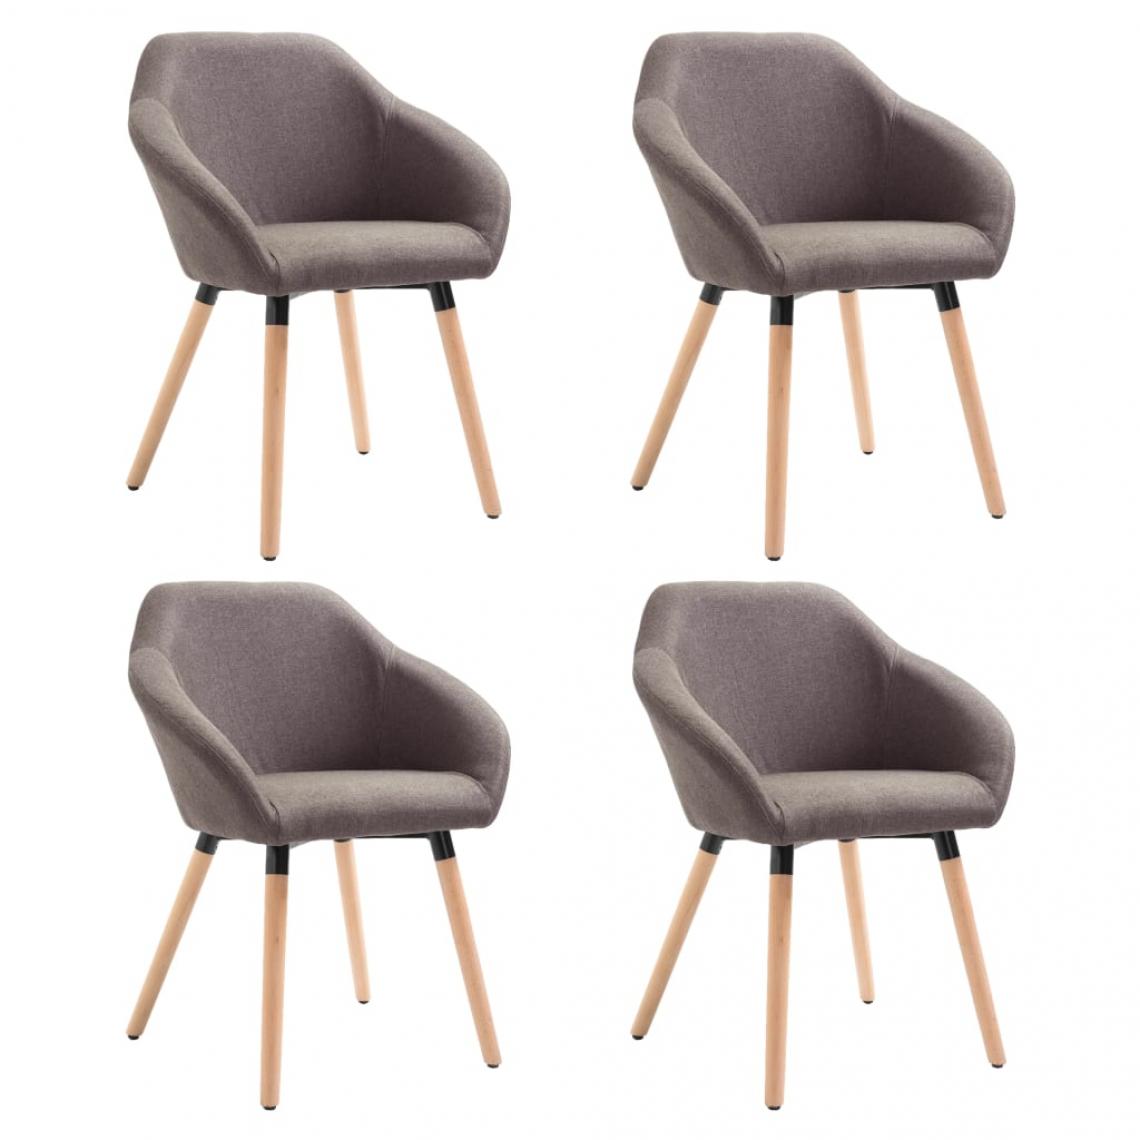 Decoshop26 - Lot de 4 chaises de salle à manger cuisine style scandinave en tissu taupe CDS021993 - Chaises